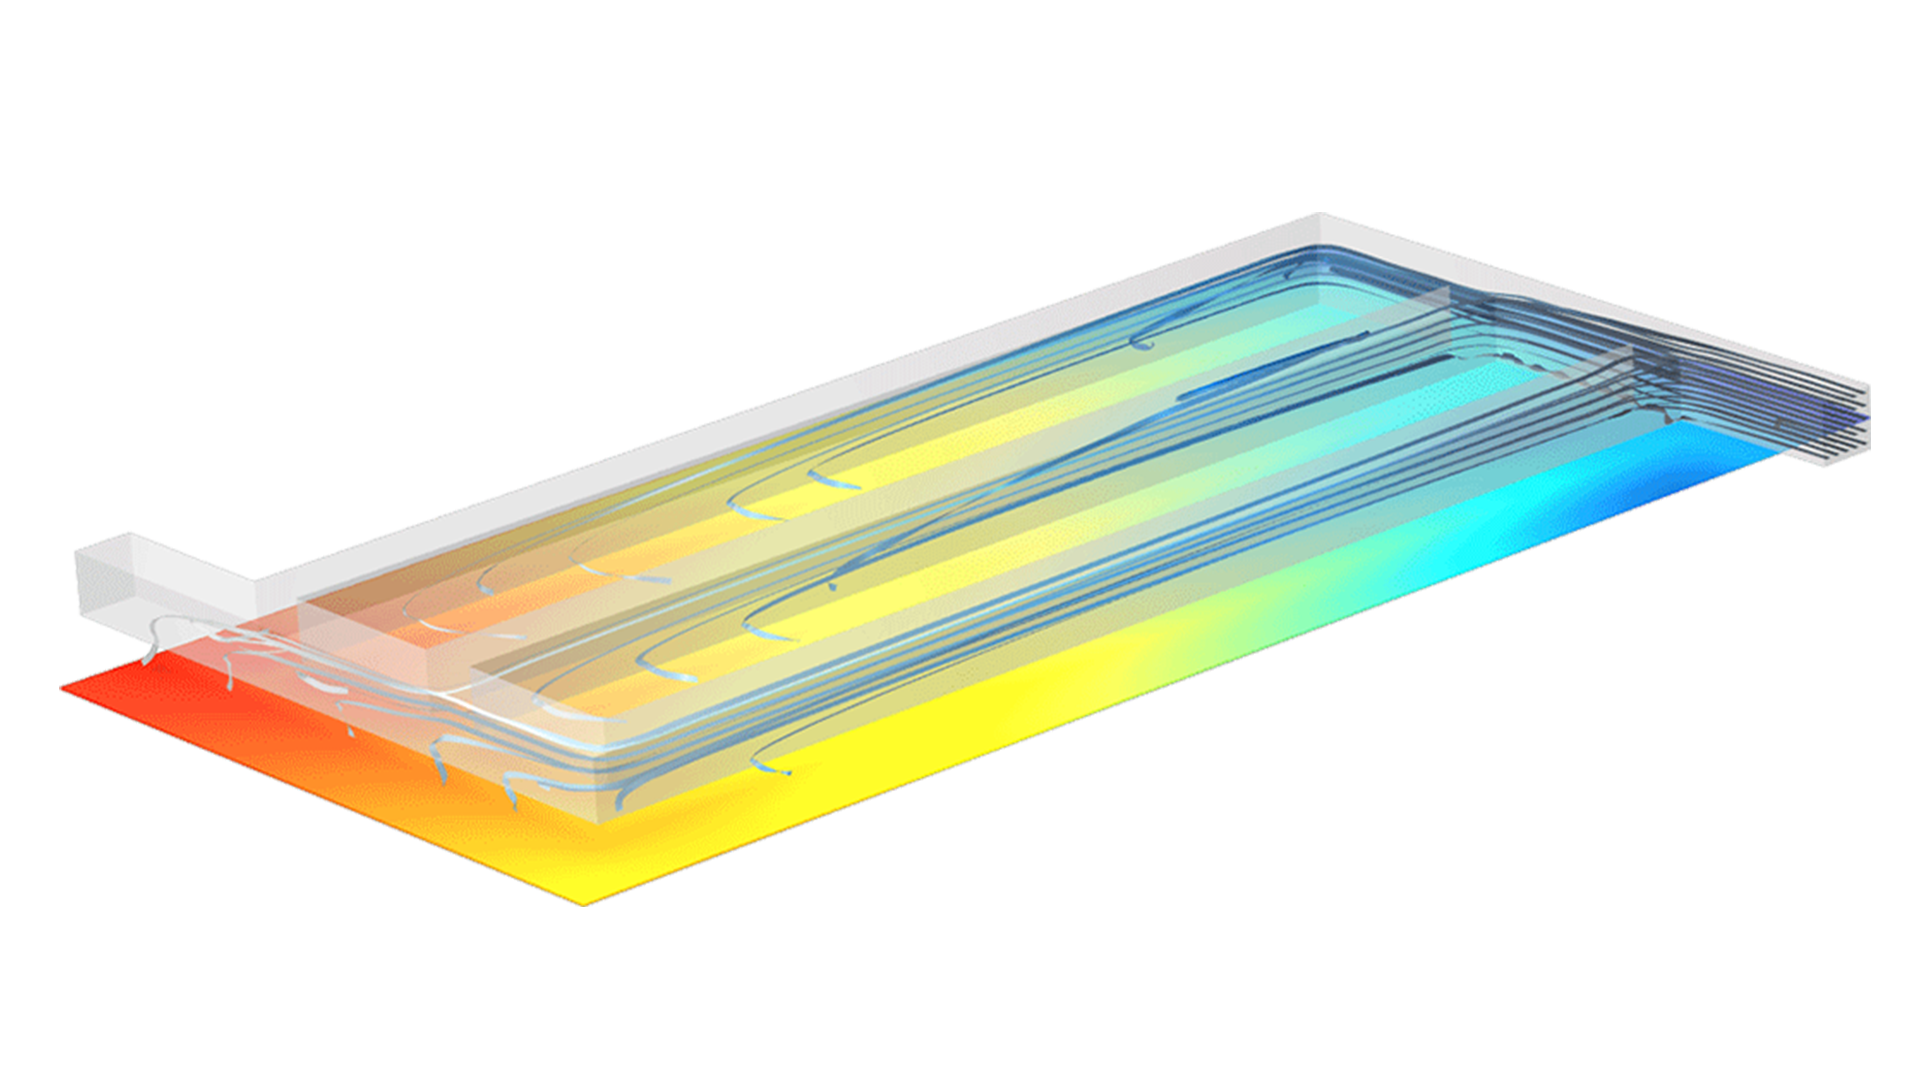 Modello di separatore di elettroliti con linee di flusso che scorrono attraverso diversi canali e un piano sottostante in gradazione arcobaleno per mostrare la distribuzione della densità di corrente.